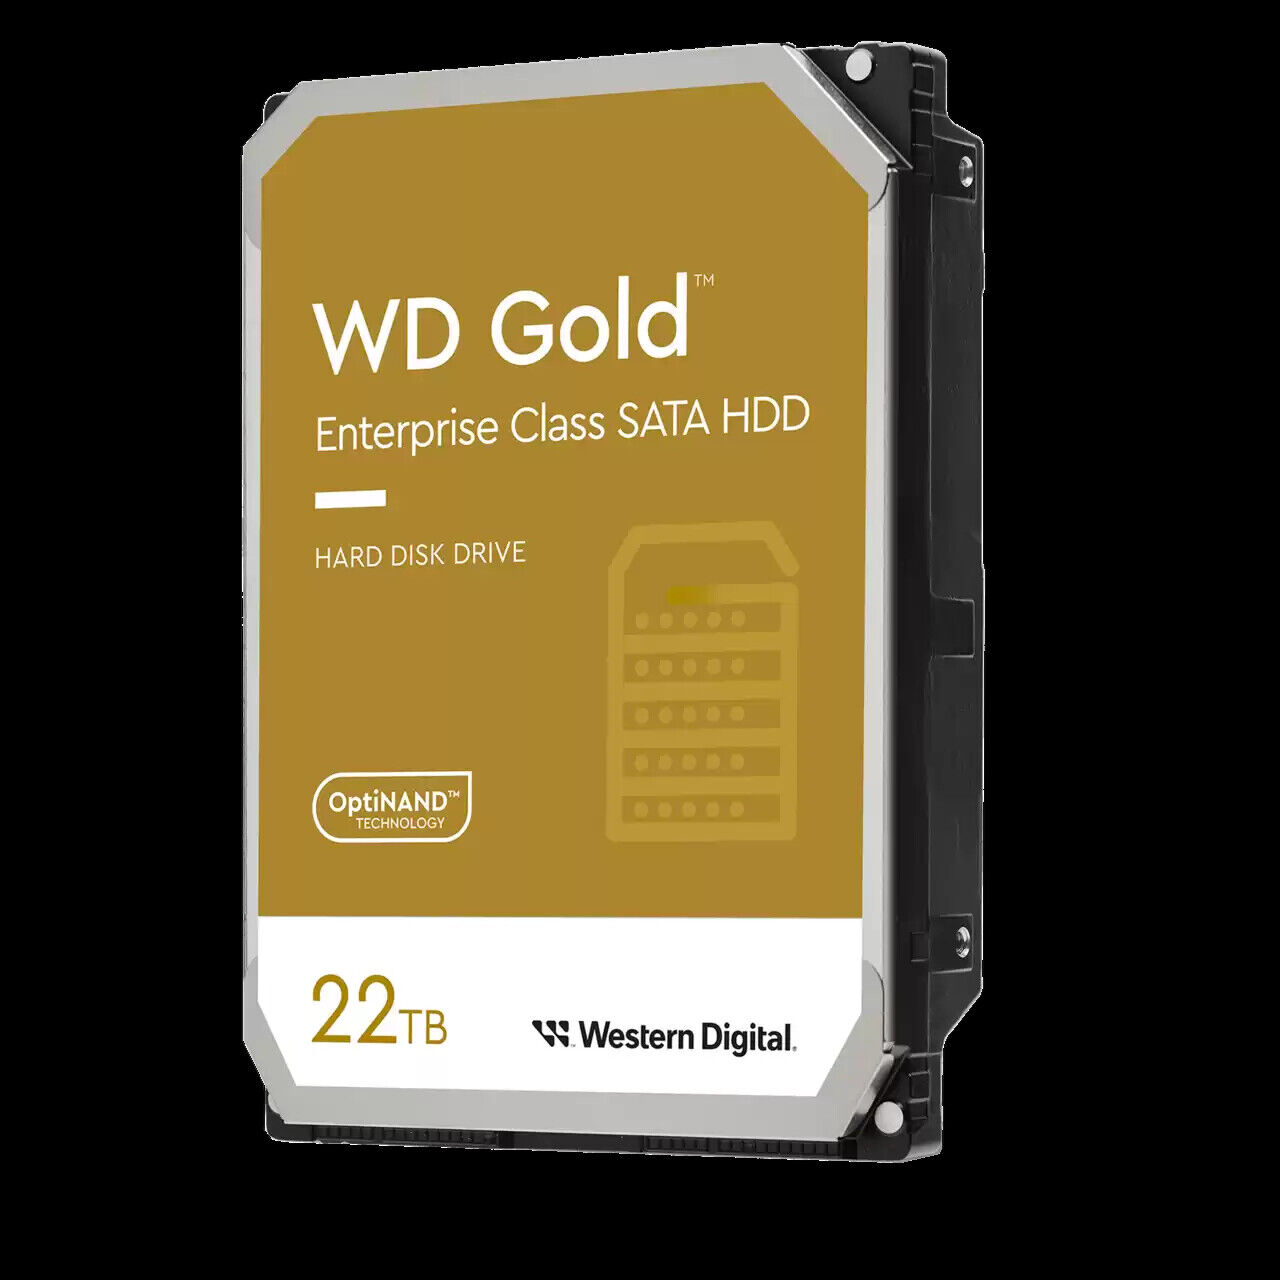 Western Digital 22TB WD Gold Enterprise Class SATA Internal HDD - WD221KRYZ